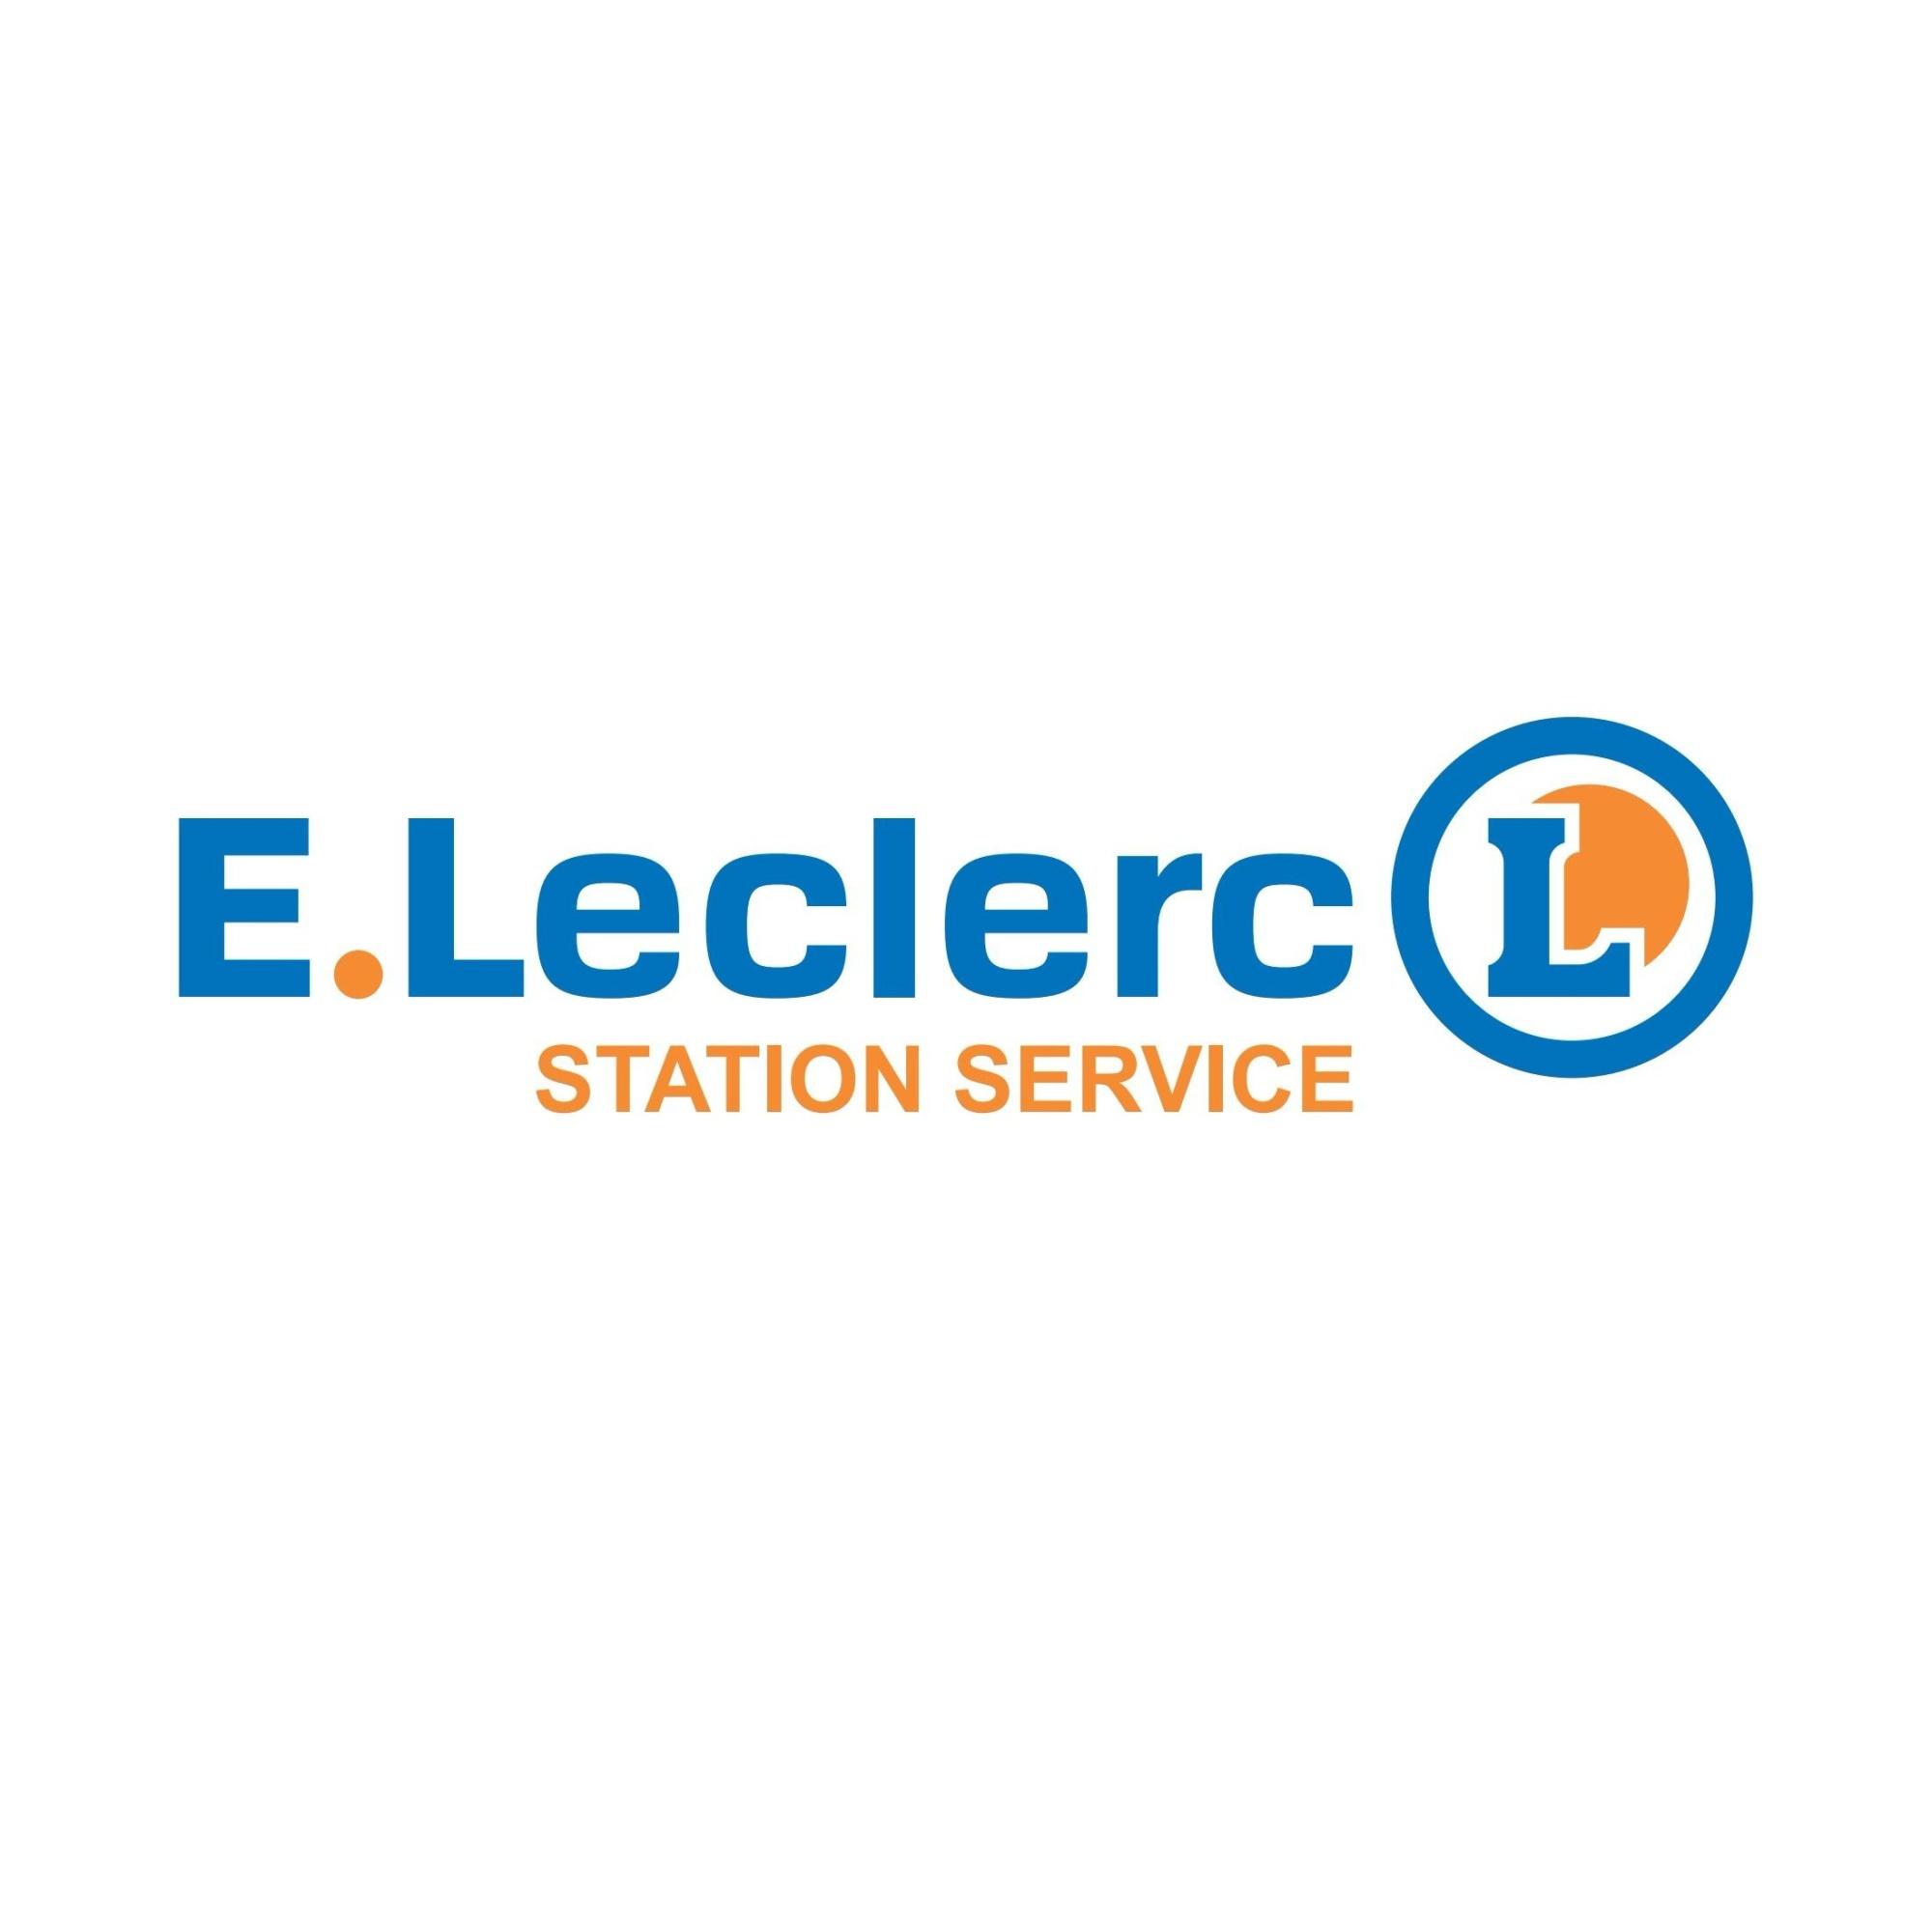 E.leclerc Station Service Ouverte 24h/24 Béziers